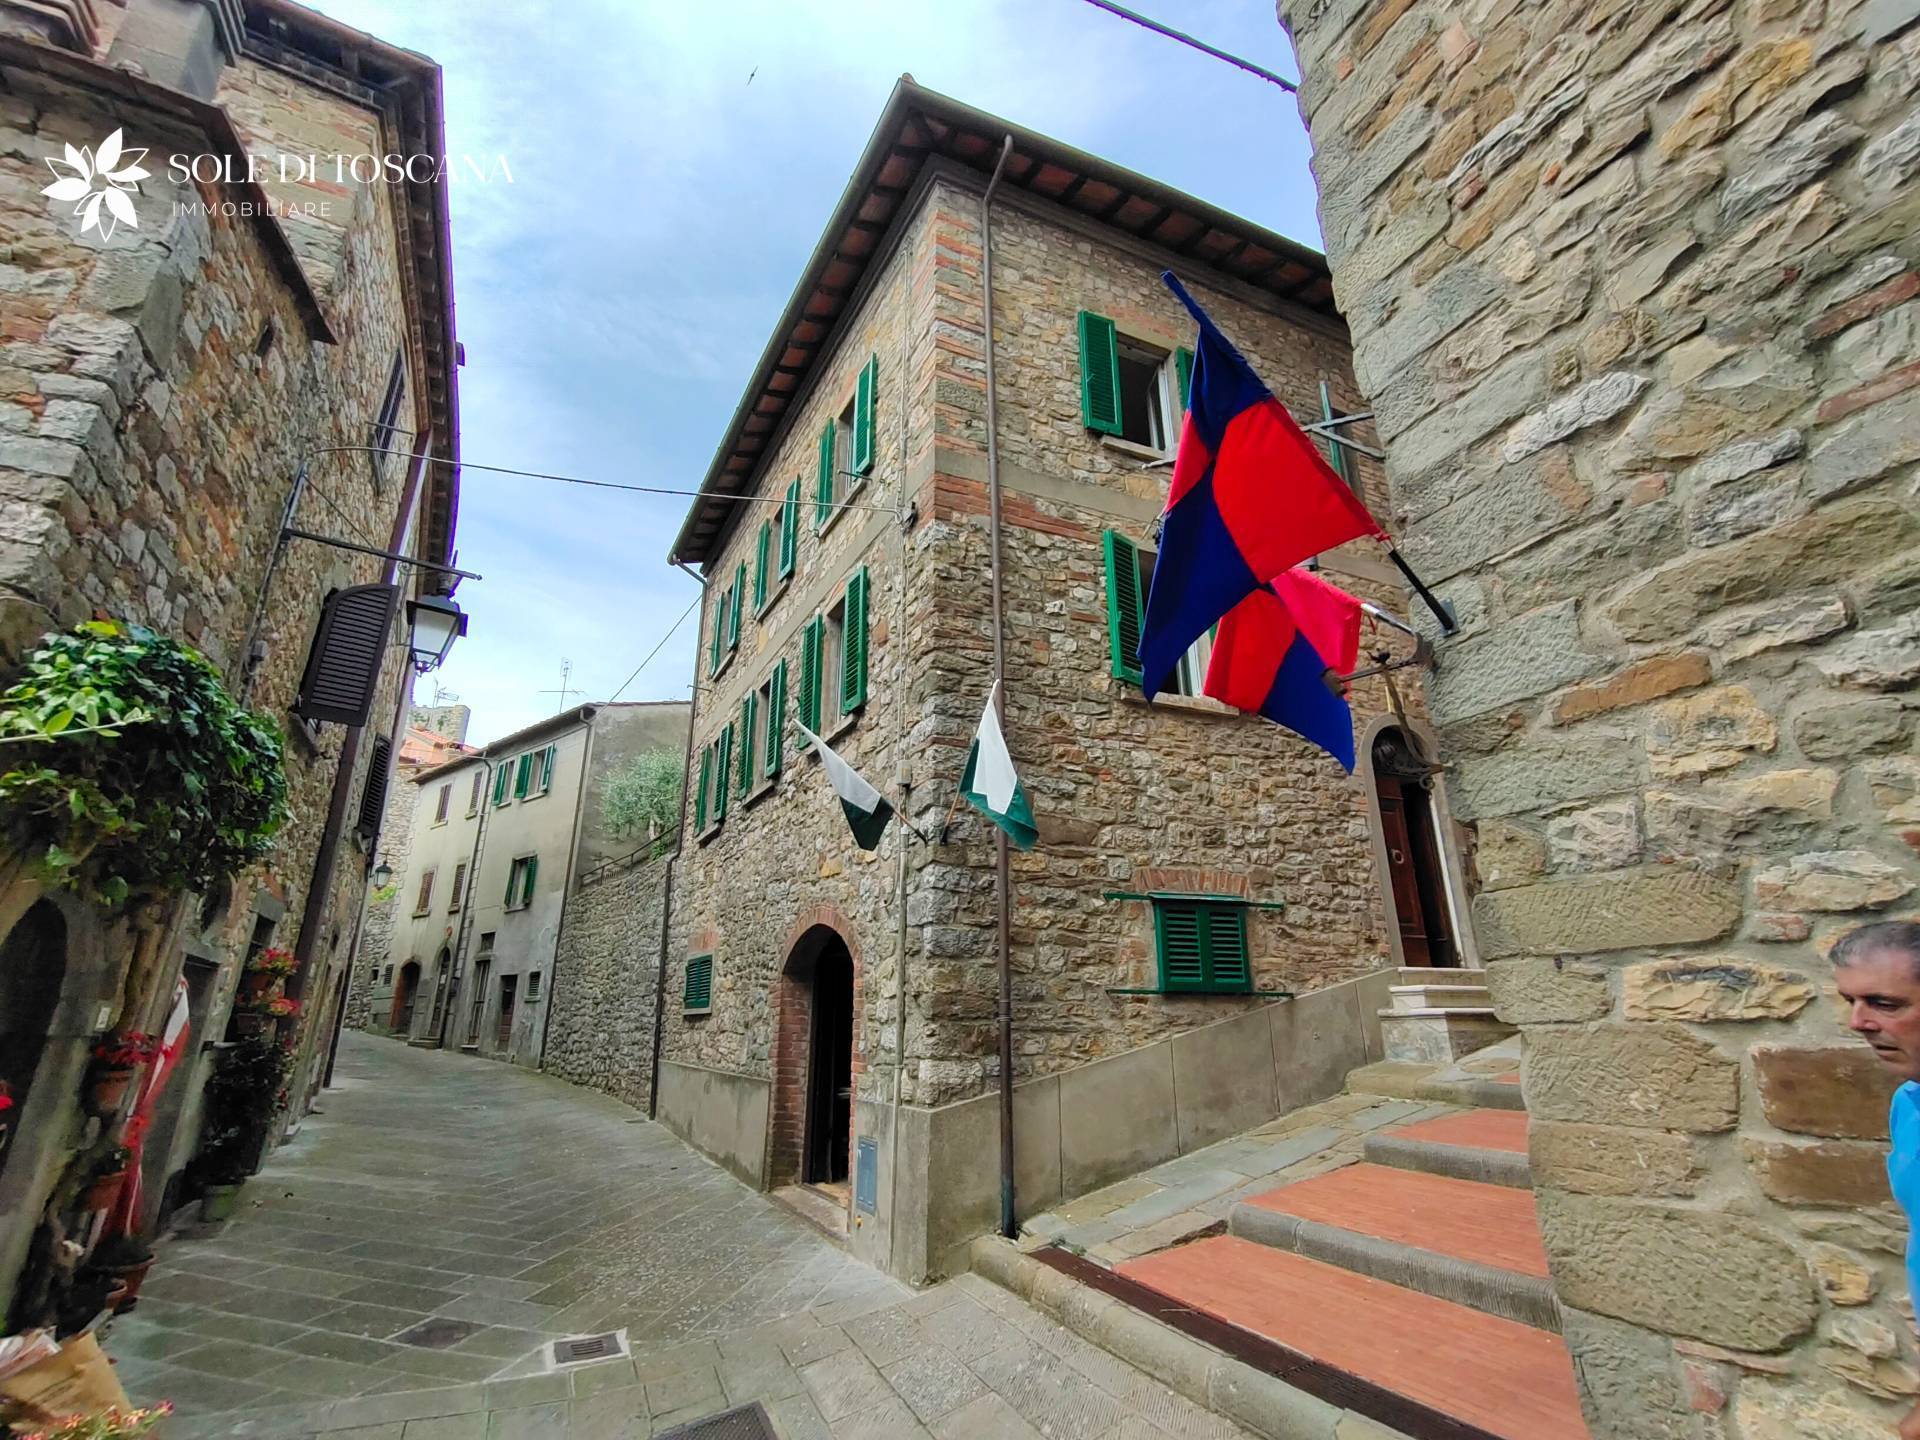 Casa indipendente in vendita a Civitella in Val di Chiana